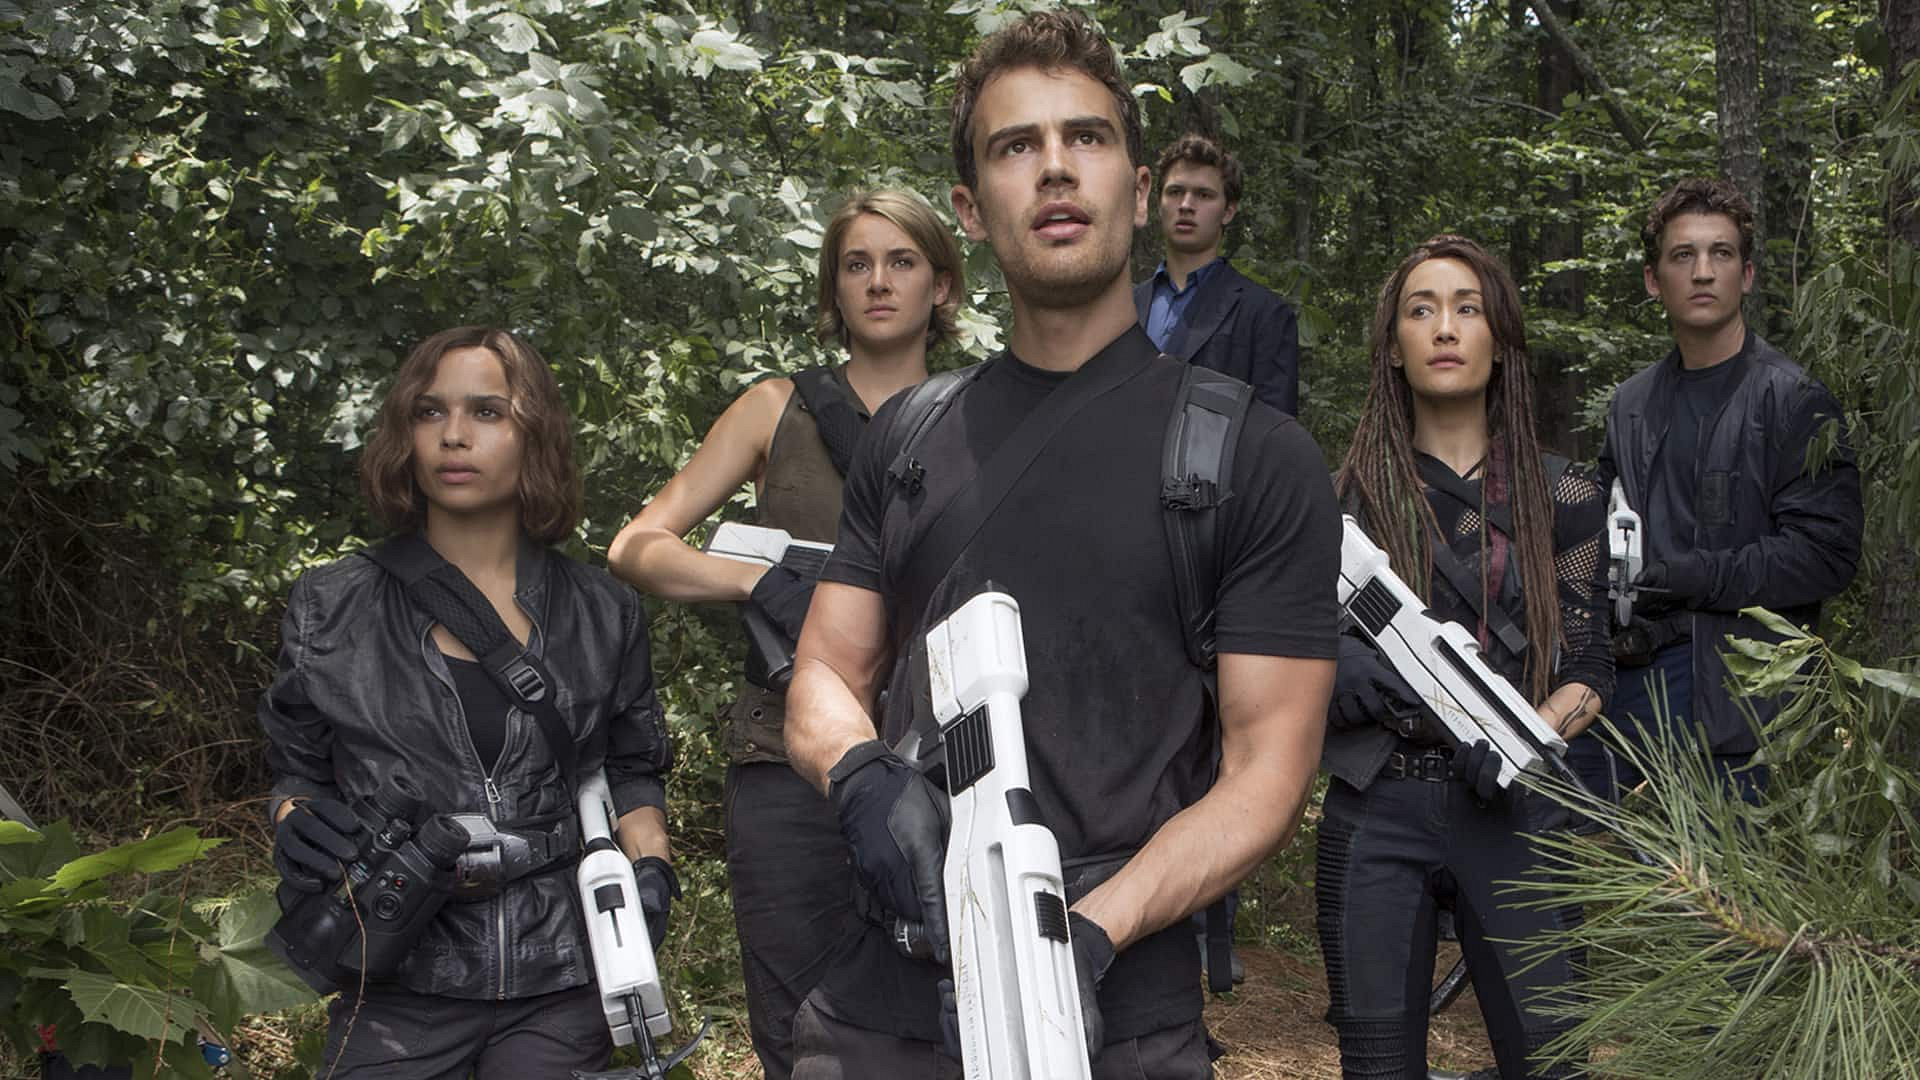 Divergent-serien: Allegiant